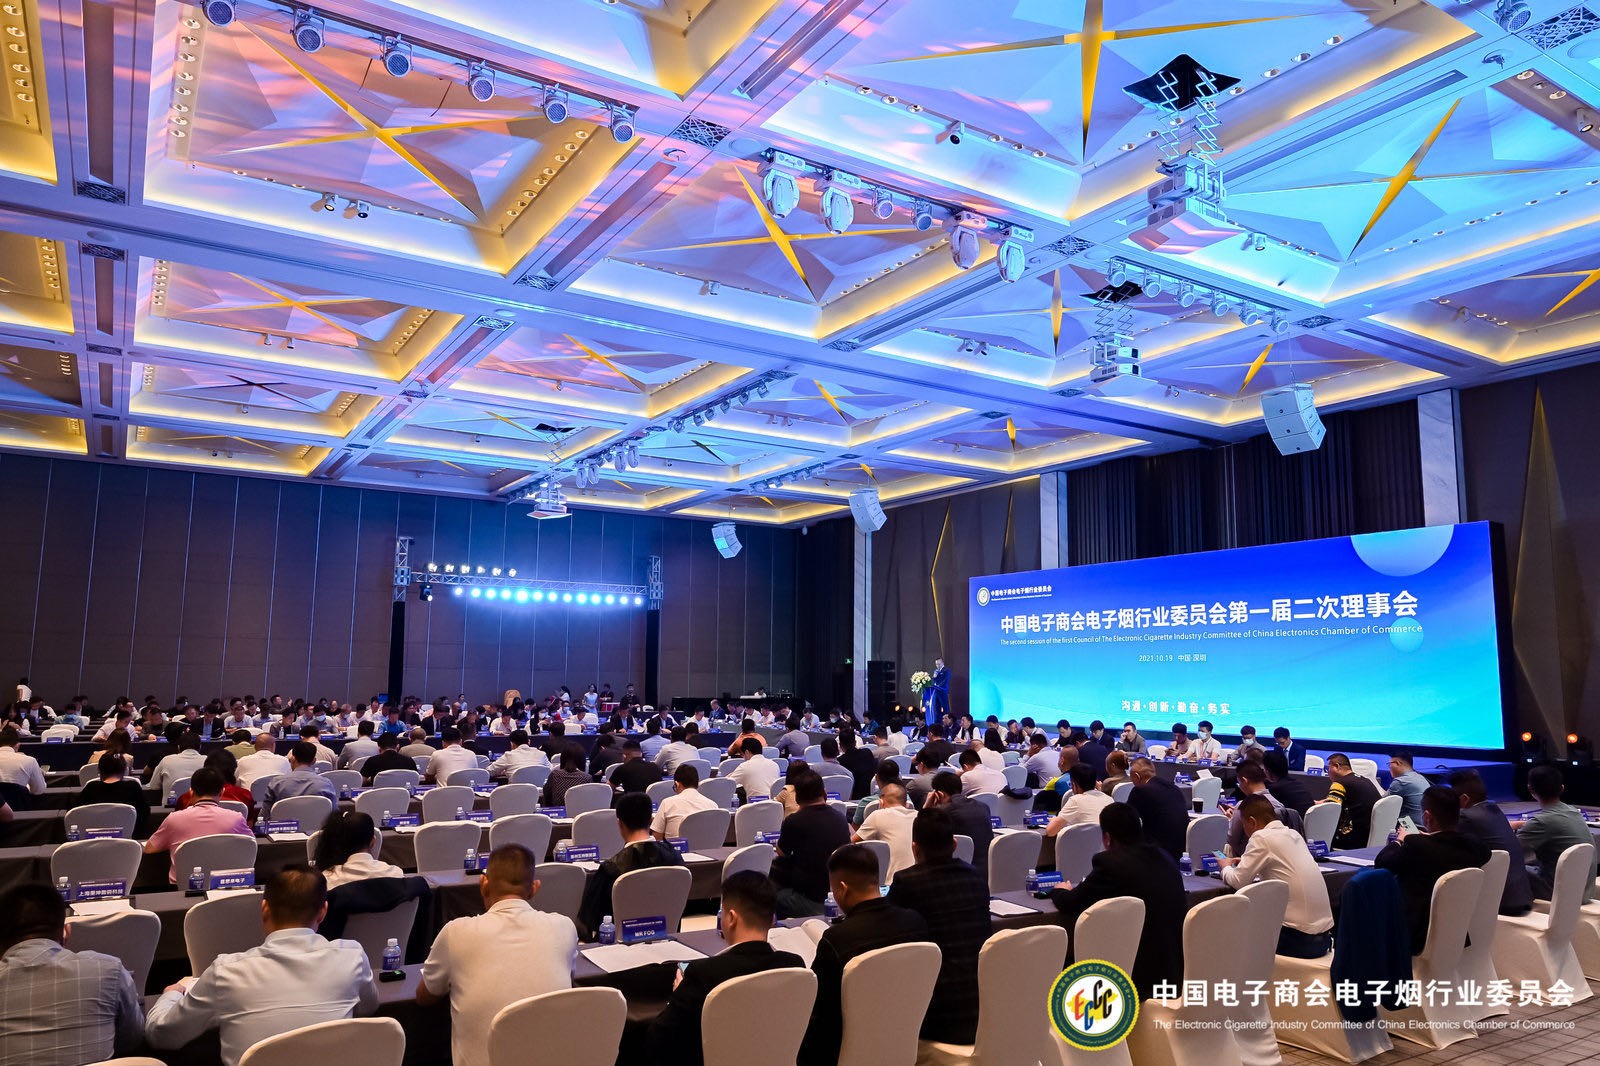 OKK祝贺中国电子商会电子烟行业委员会第二届一次理事会胜利召开